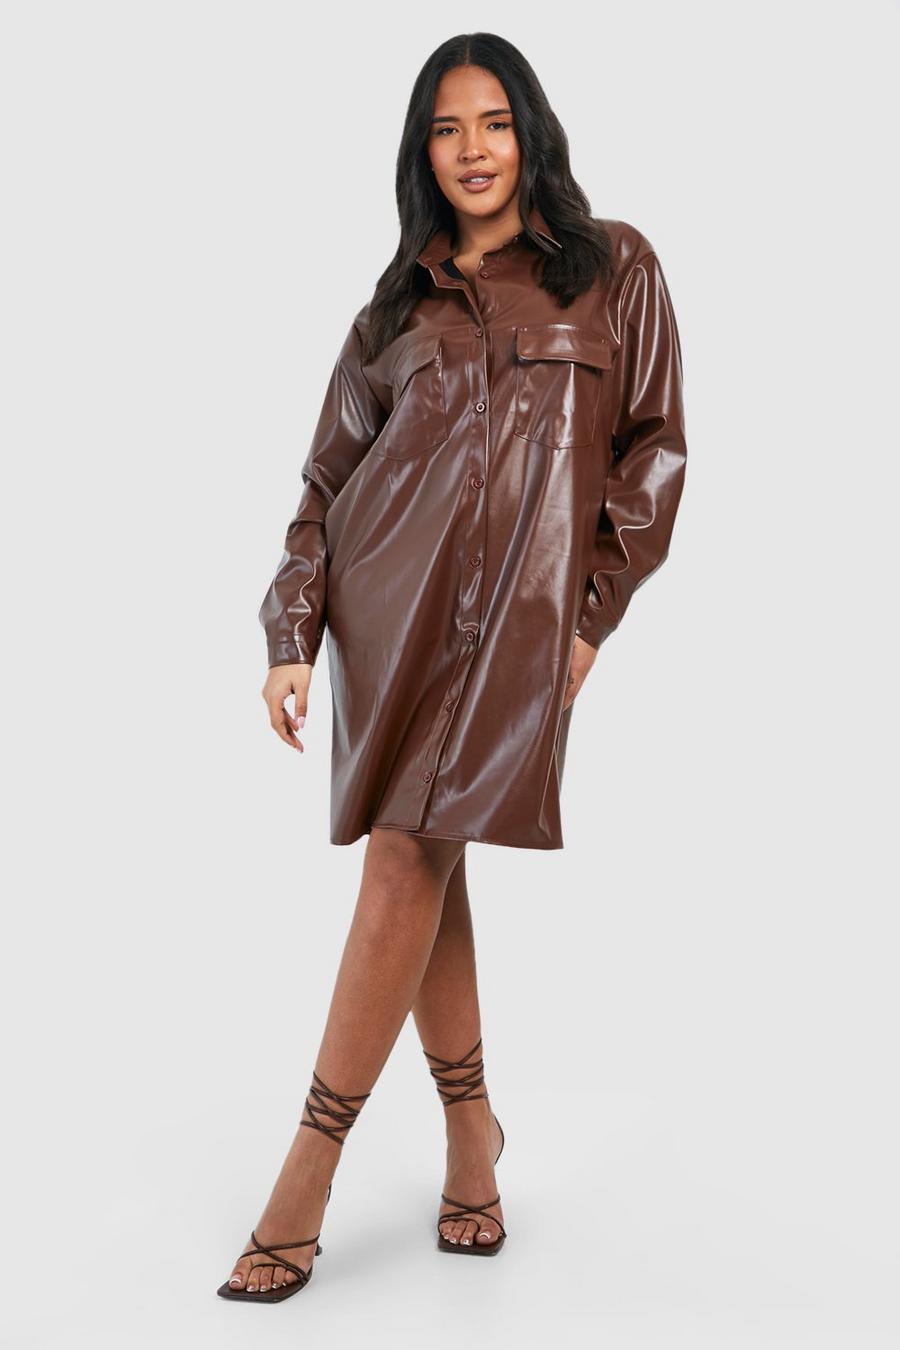 Vestito camicia Plus Size in PU con tasche, Chocolate marrone